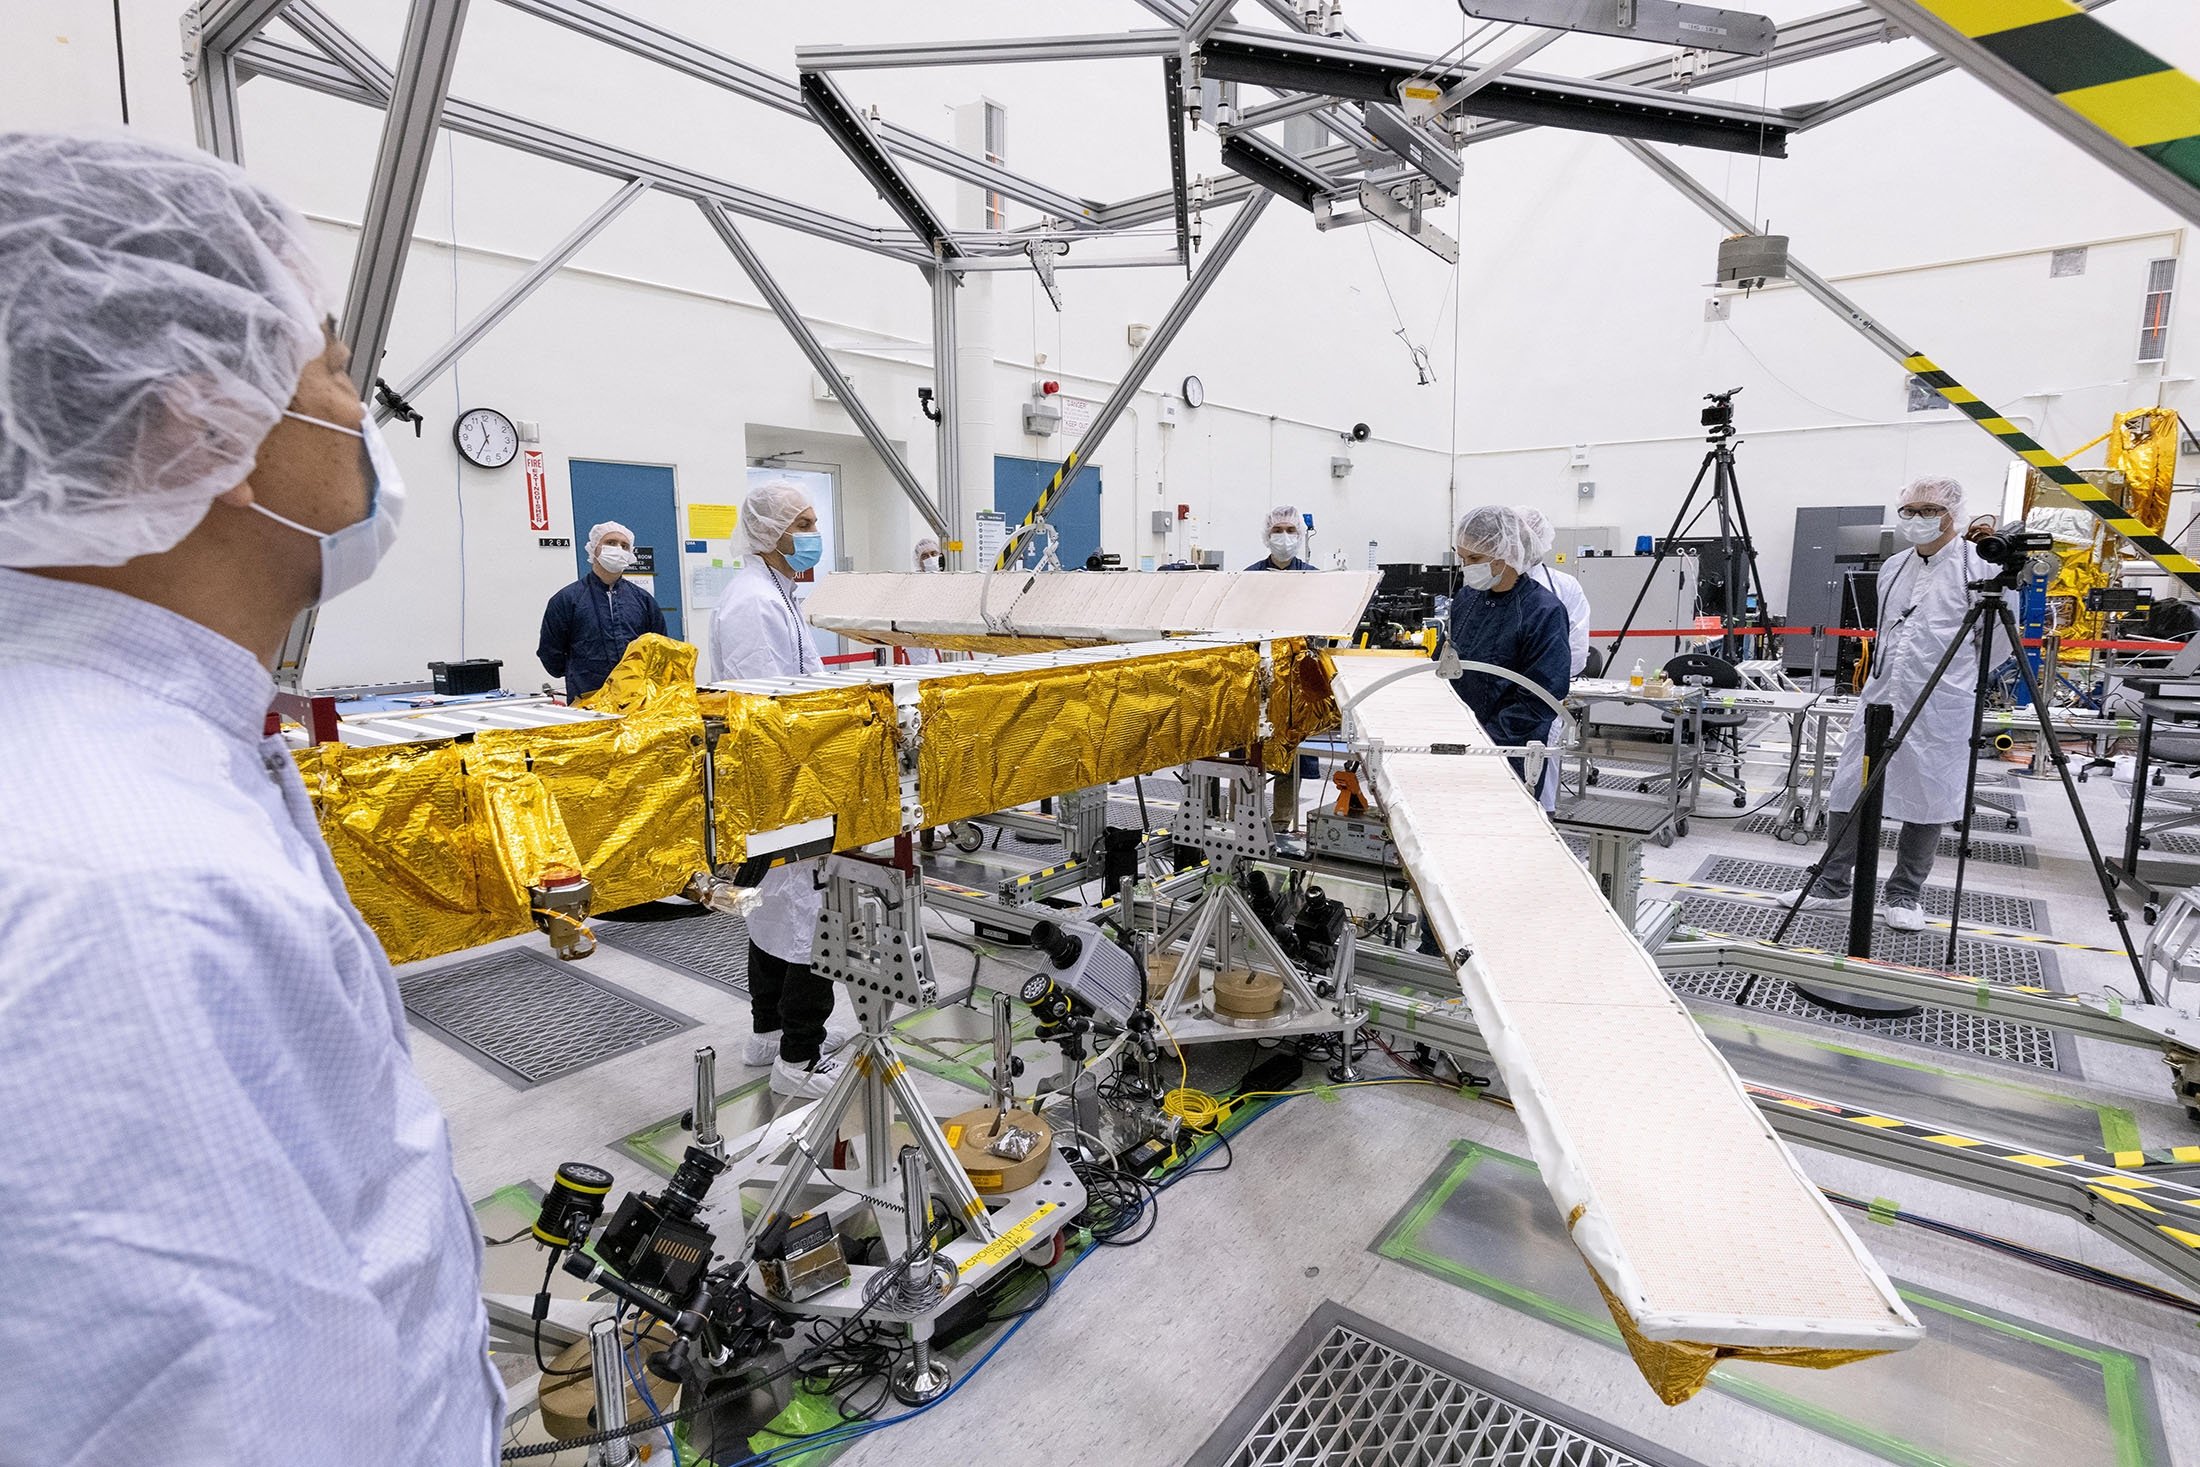 Anggota misi satelit radar SWOT internasional menguji salah satu antena di ruang bersih di Jet Propulsion Laboratory NASA di Pasadena, California, AS, 2022. (Foto Reuters)